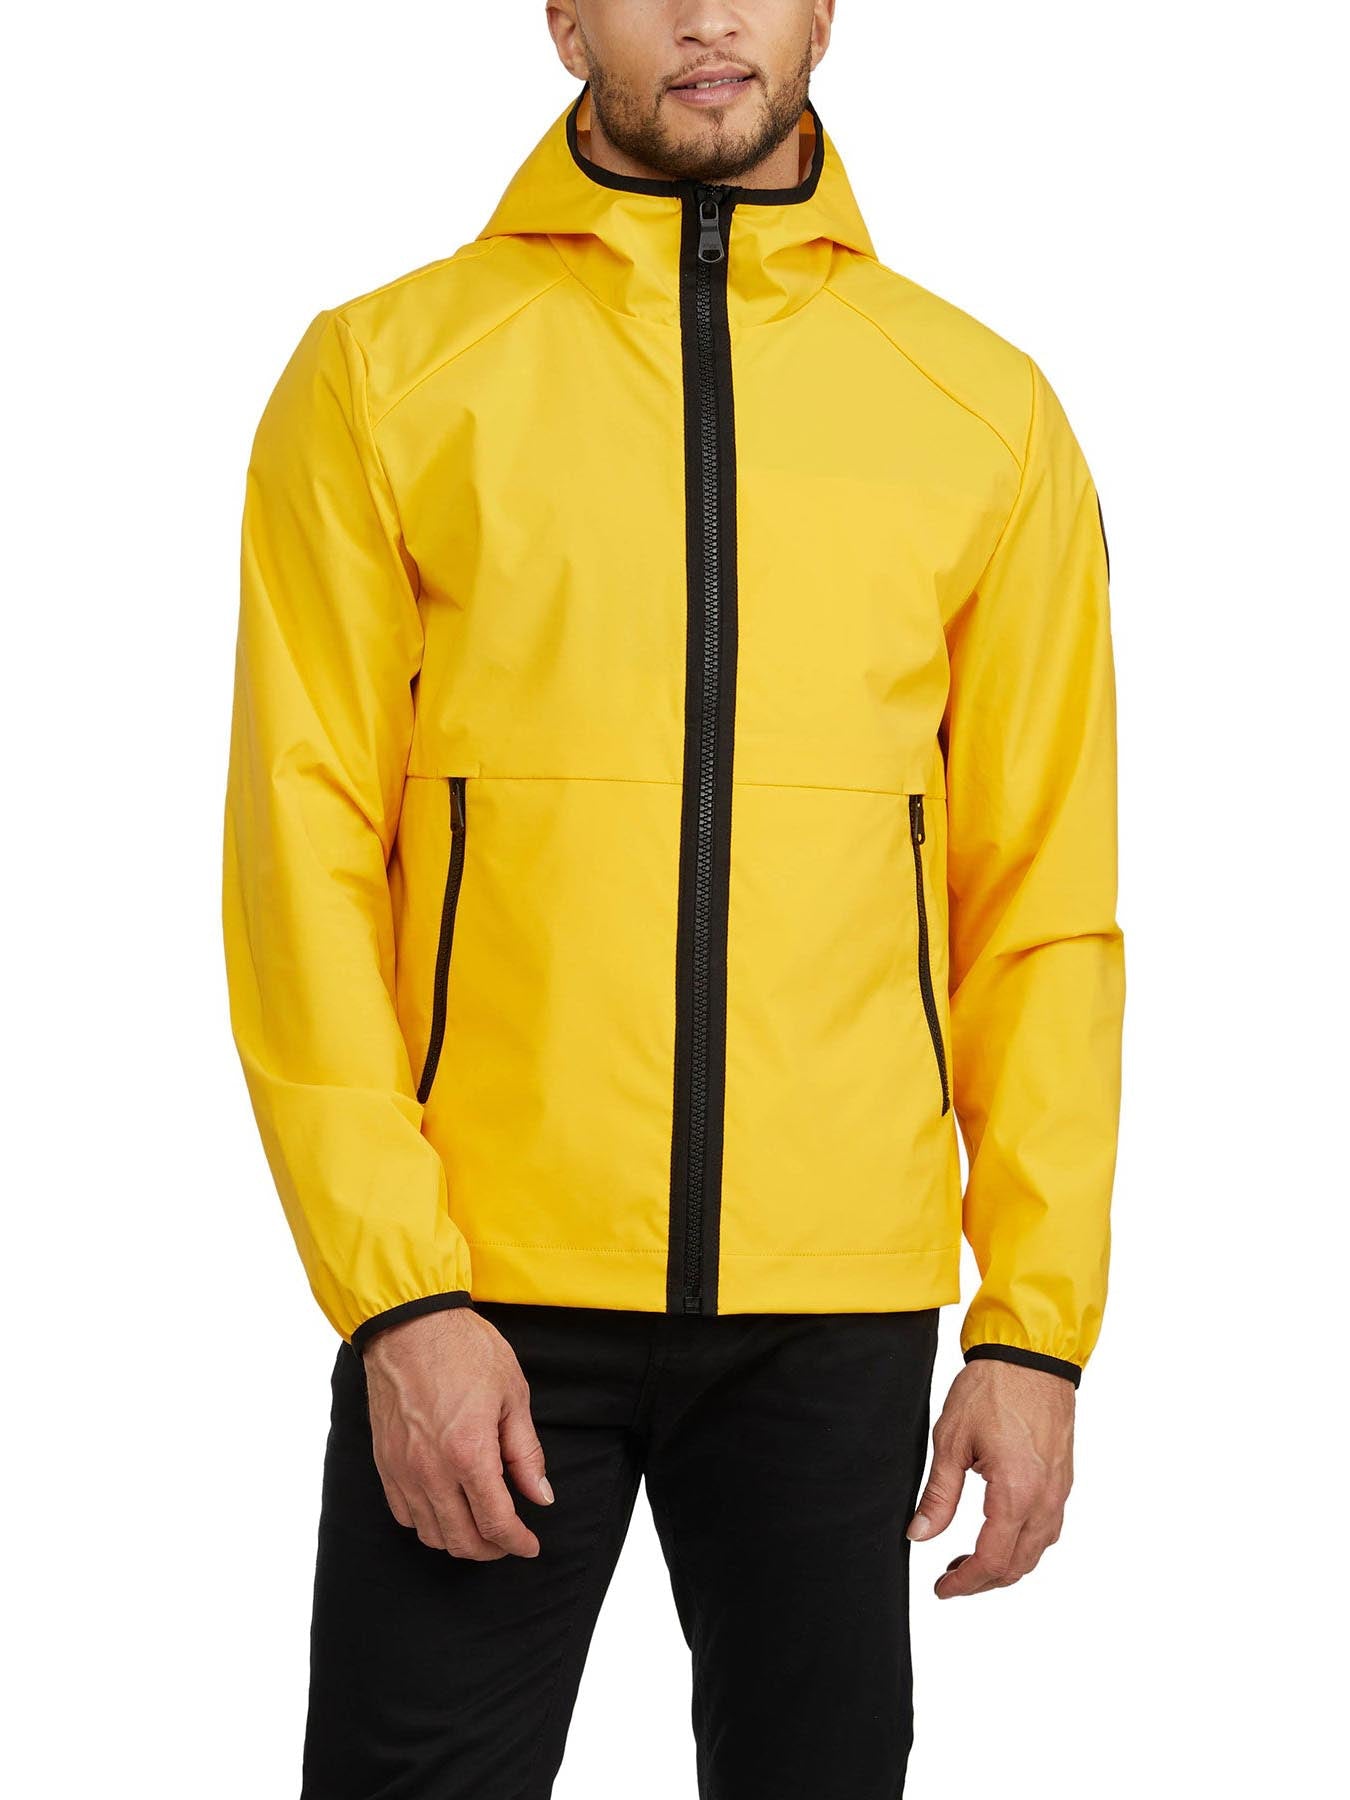 Benton Men's Packable Rain Jacket